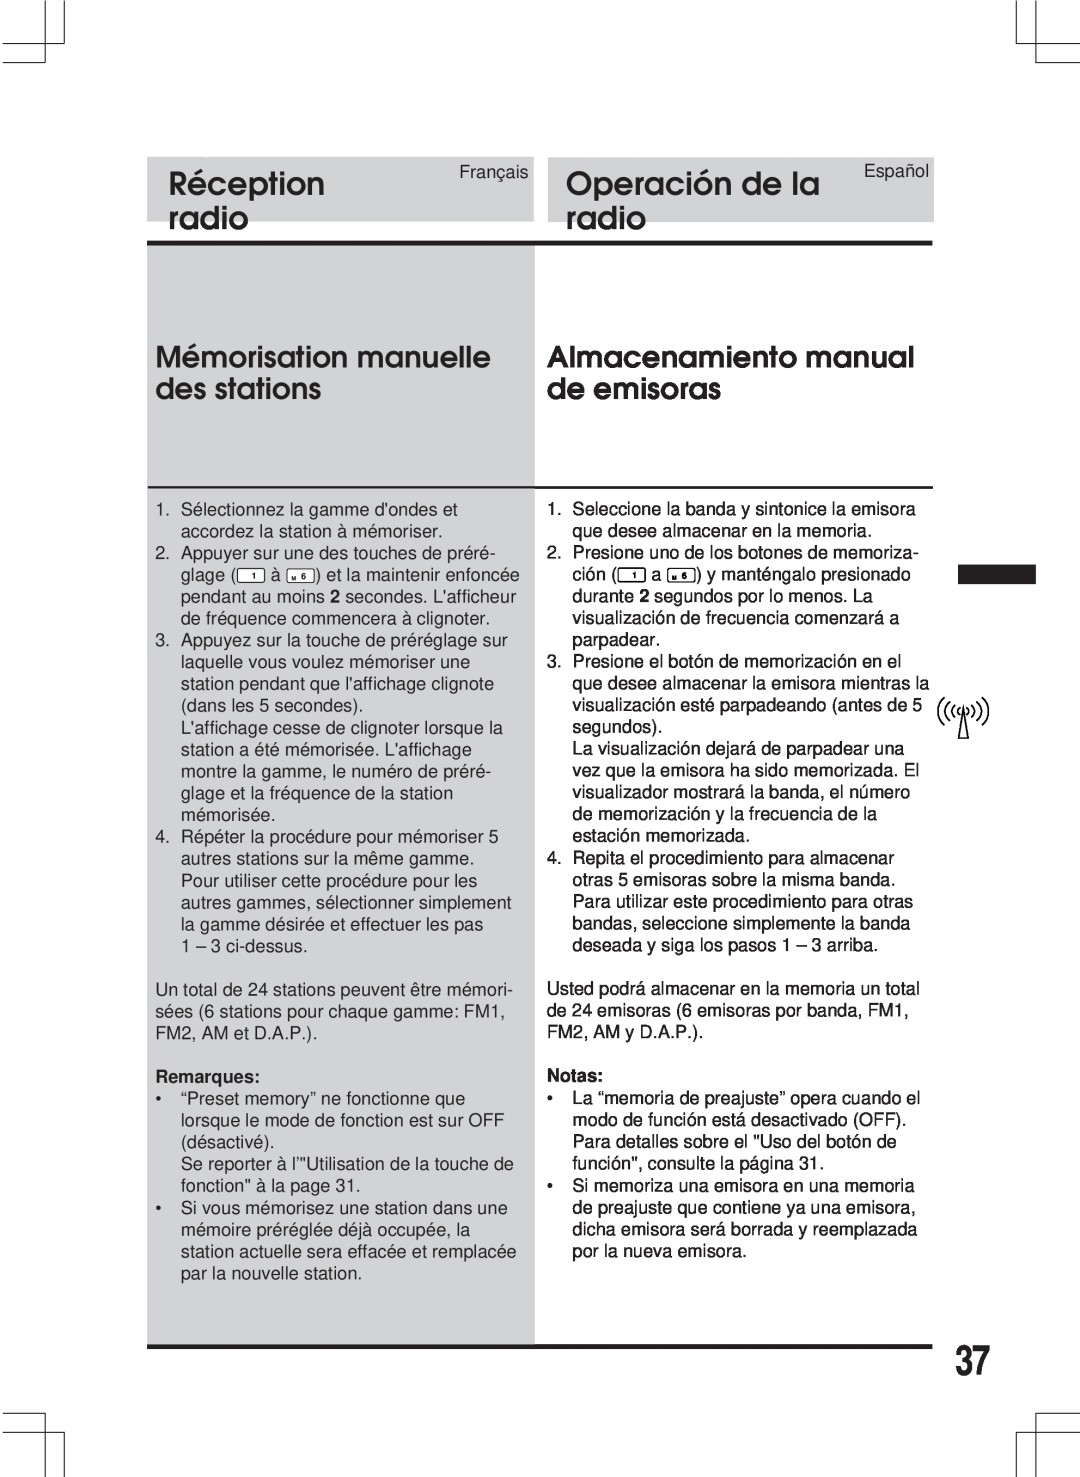 Alpine MDA-W890 Mémorisation manuelle, Almacenamiento manual, des stations, de emisoras, Réception, Operación de la, radio 